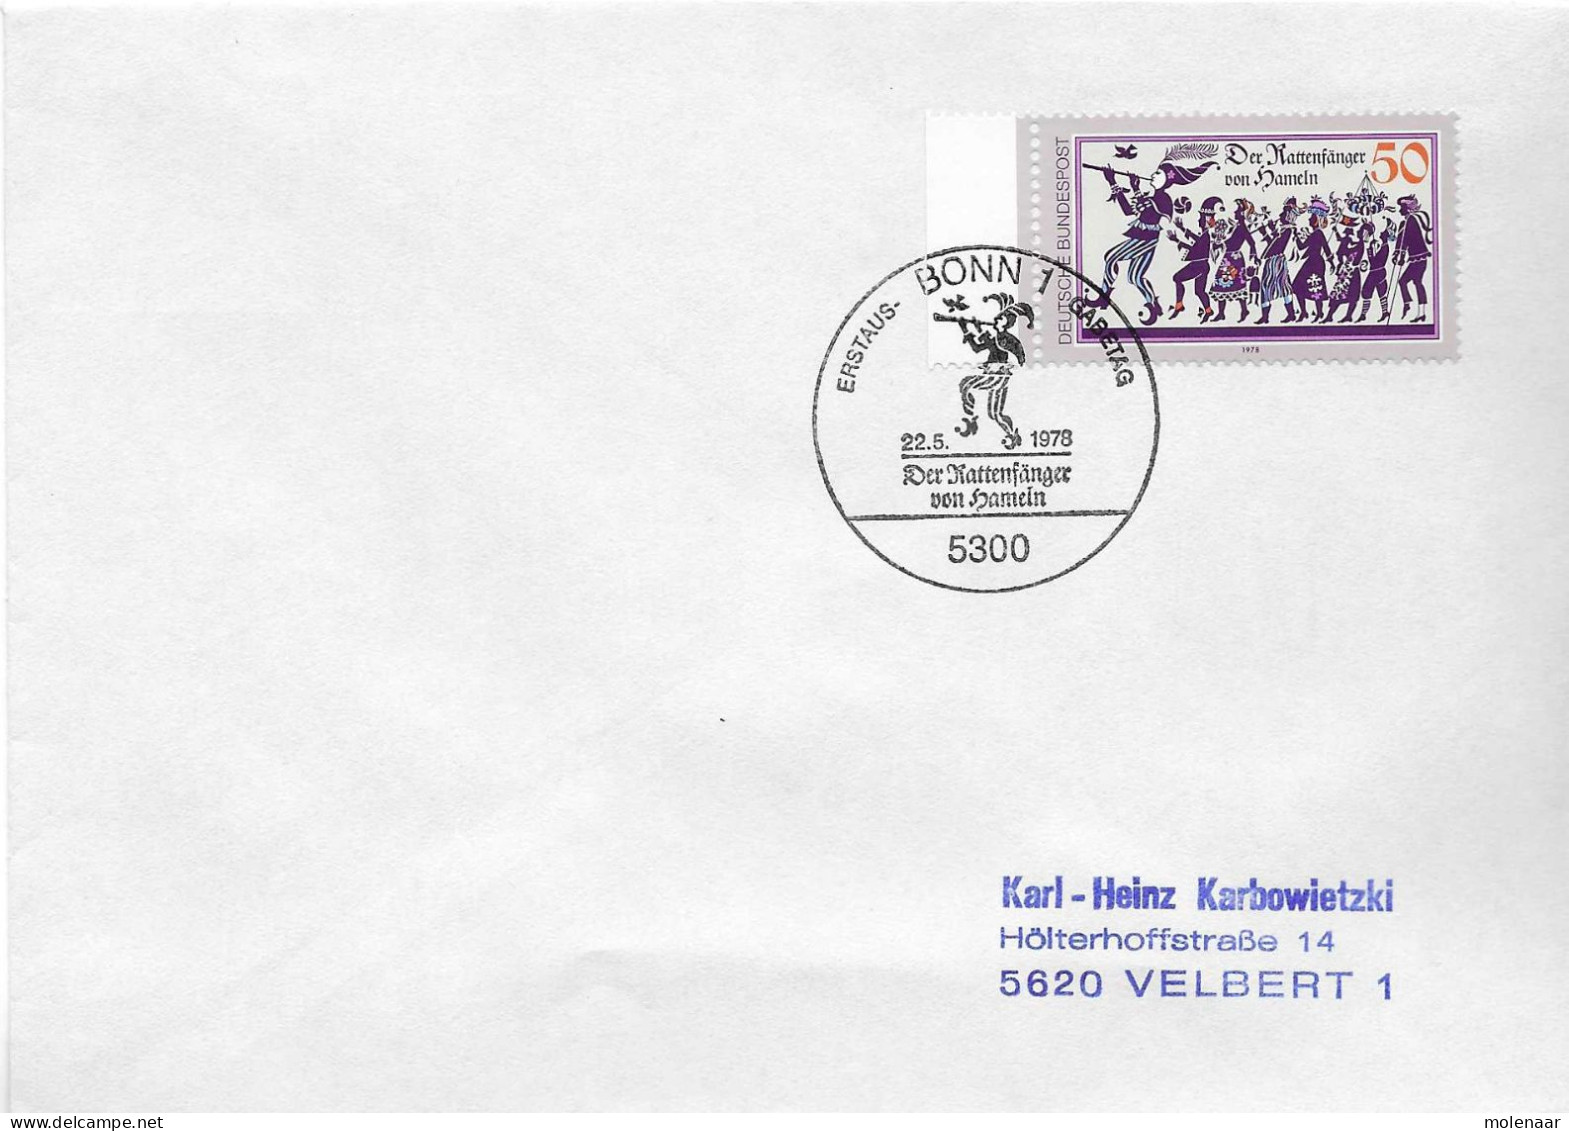 Postzegels > Europa > Duitsland > West-Duitsland > 1970-1979 > Brief Met No. 972 (17367) - Brieven En Documenten